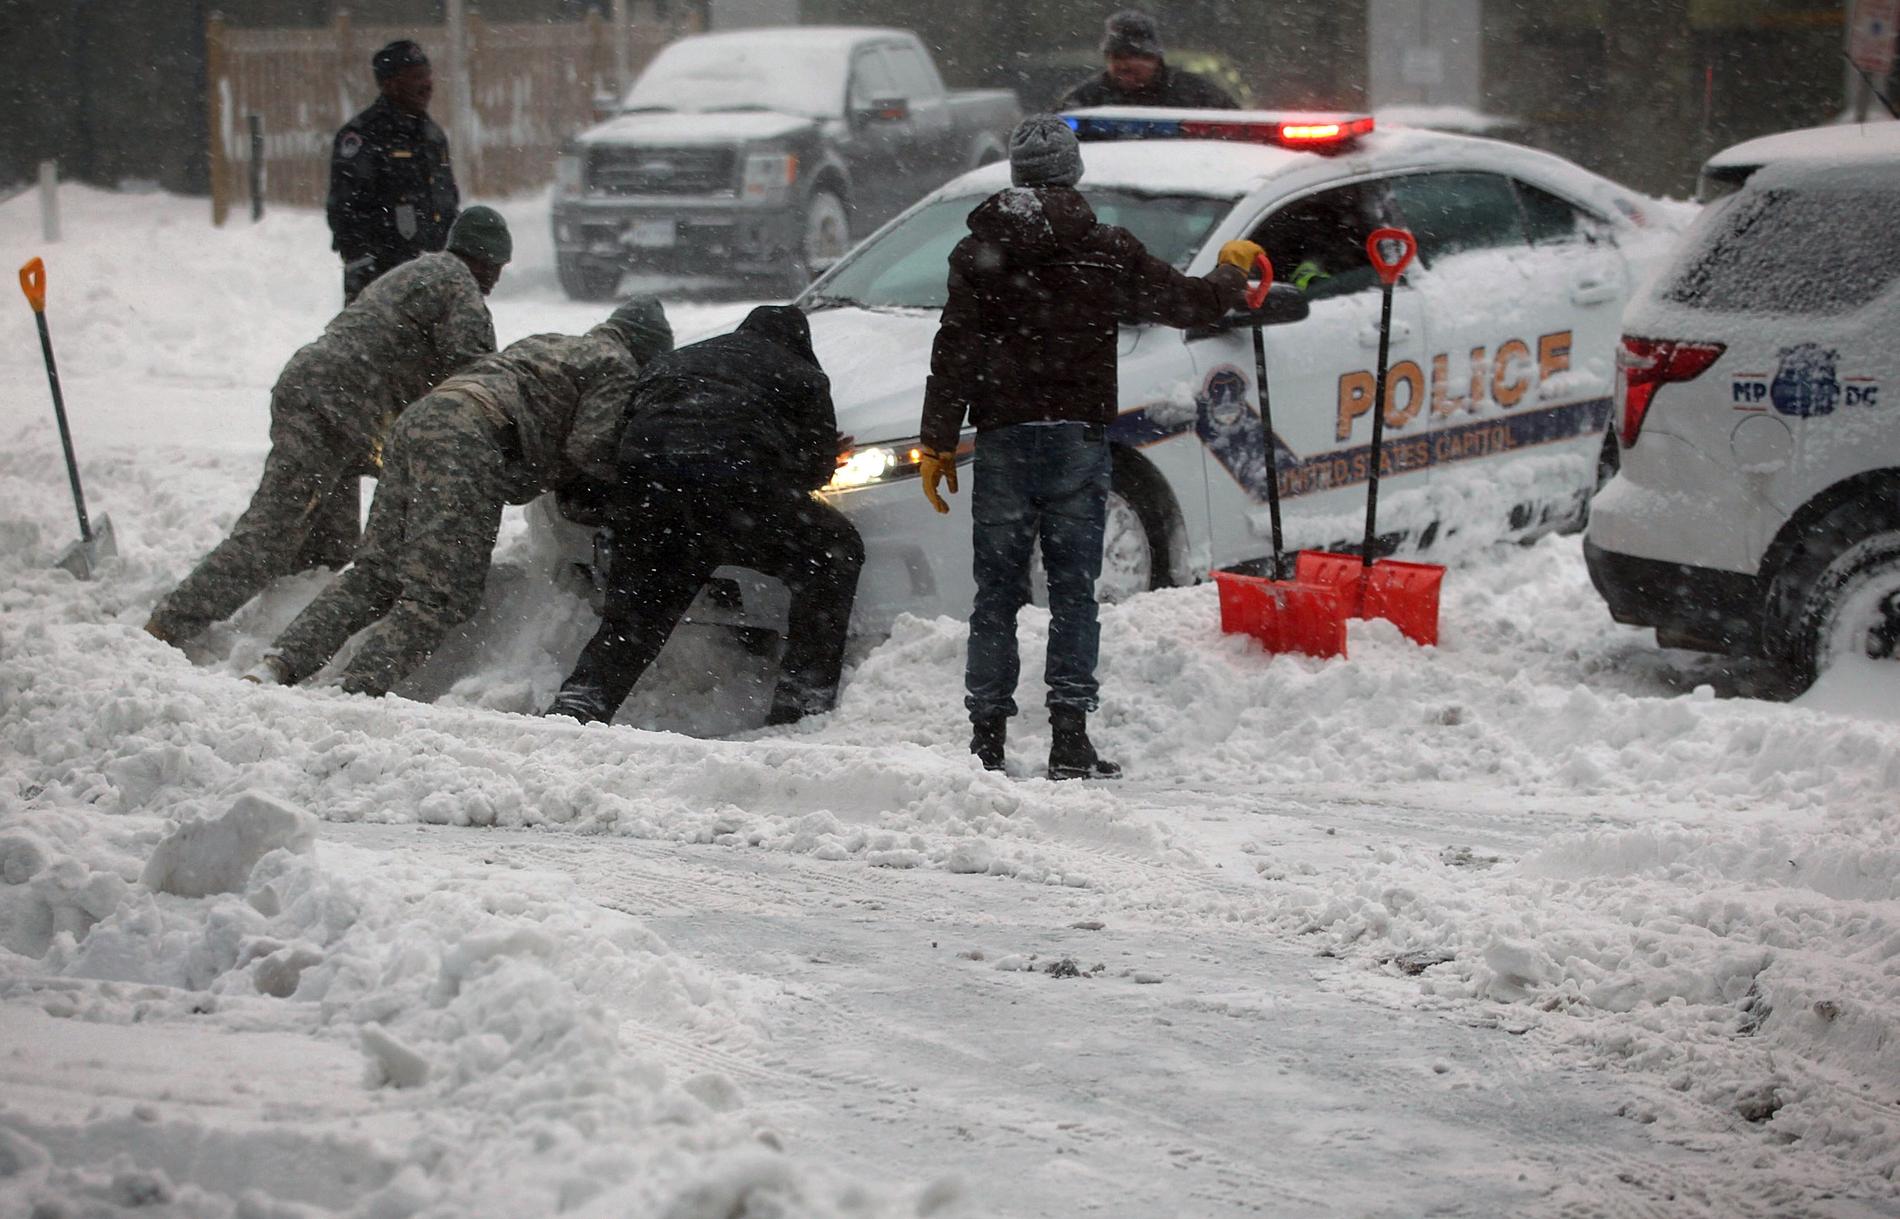 En polisbil har fastnat i snömassorna i Washington DC och får hjälp att komma loss.